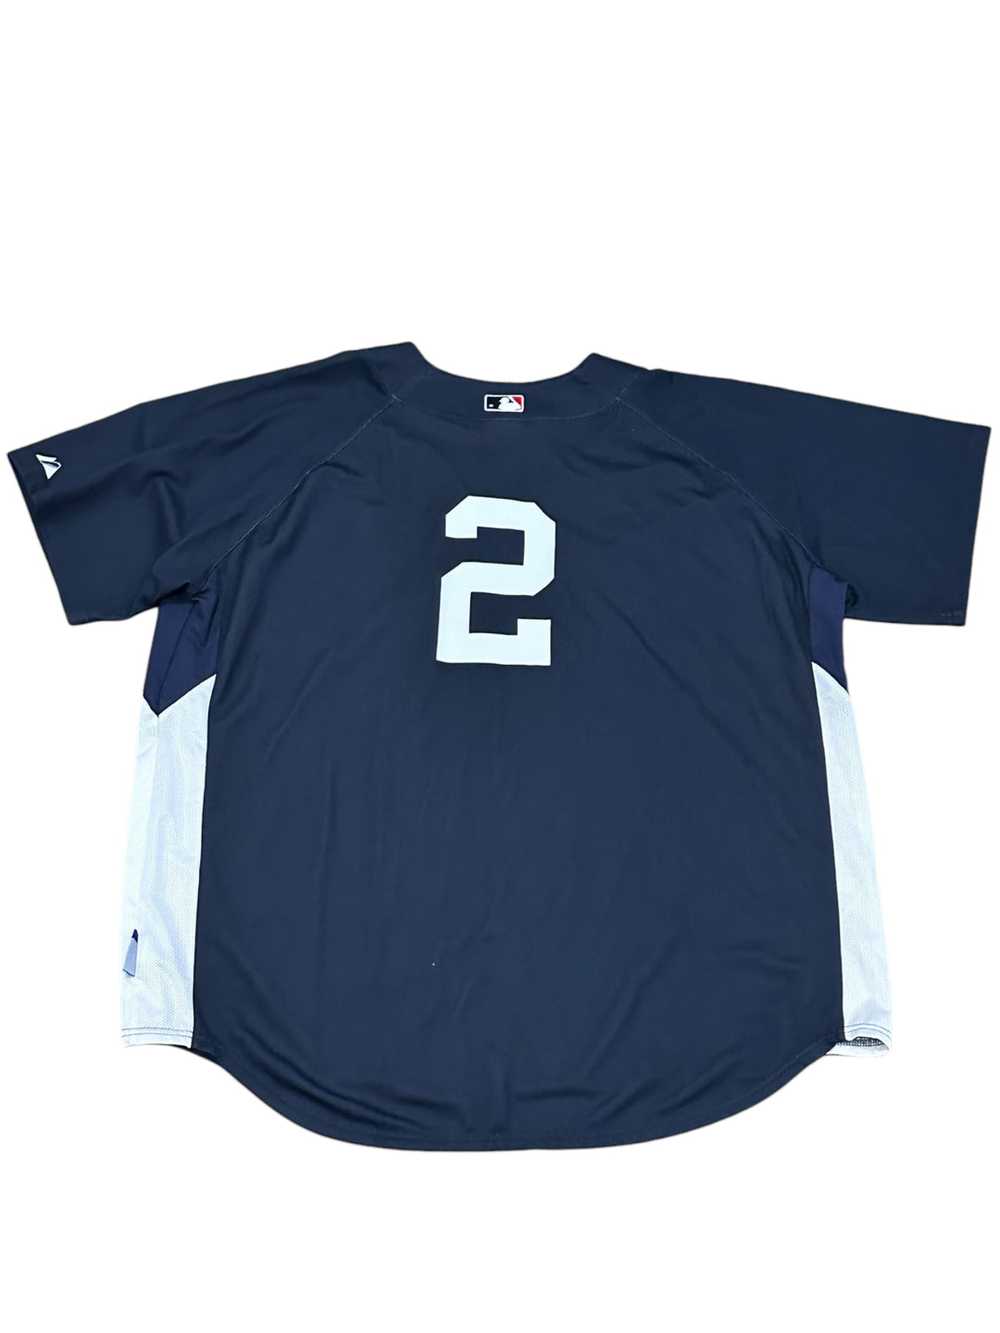 Yankees Derek Jeter Practice Jersey size 2X - image 1